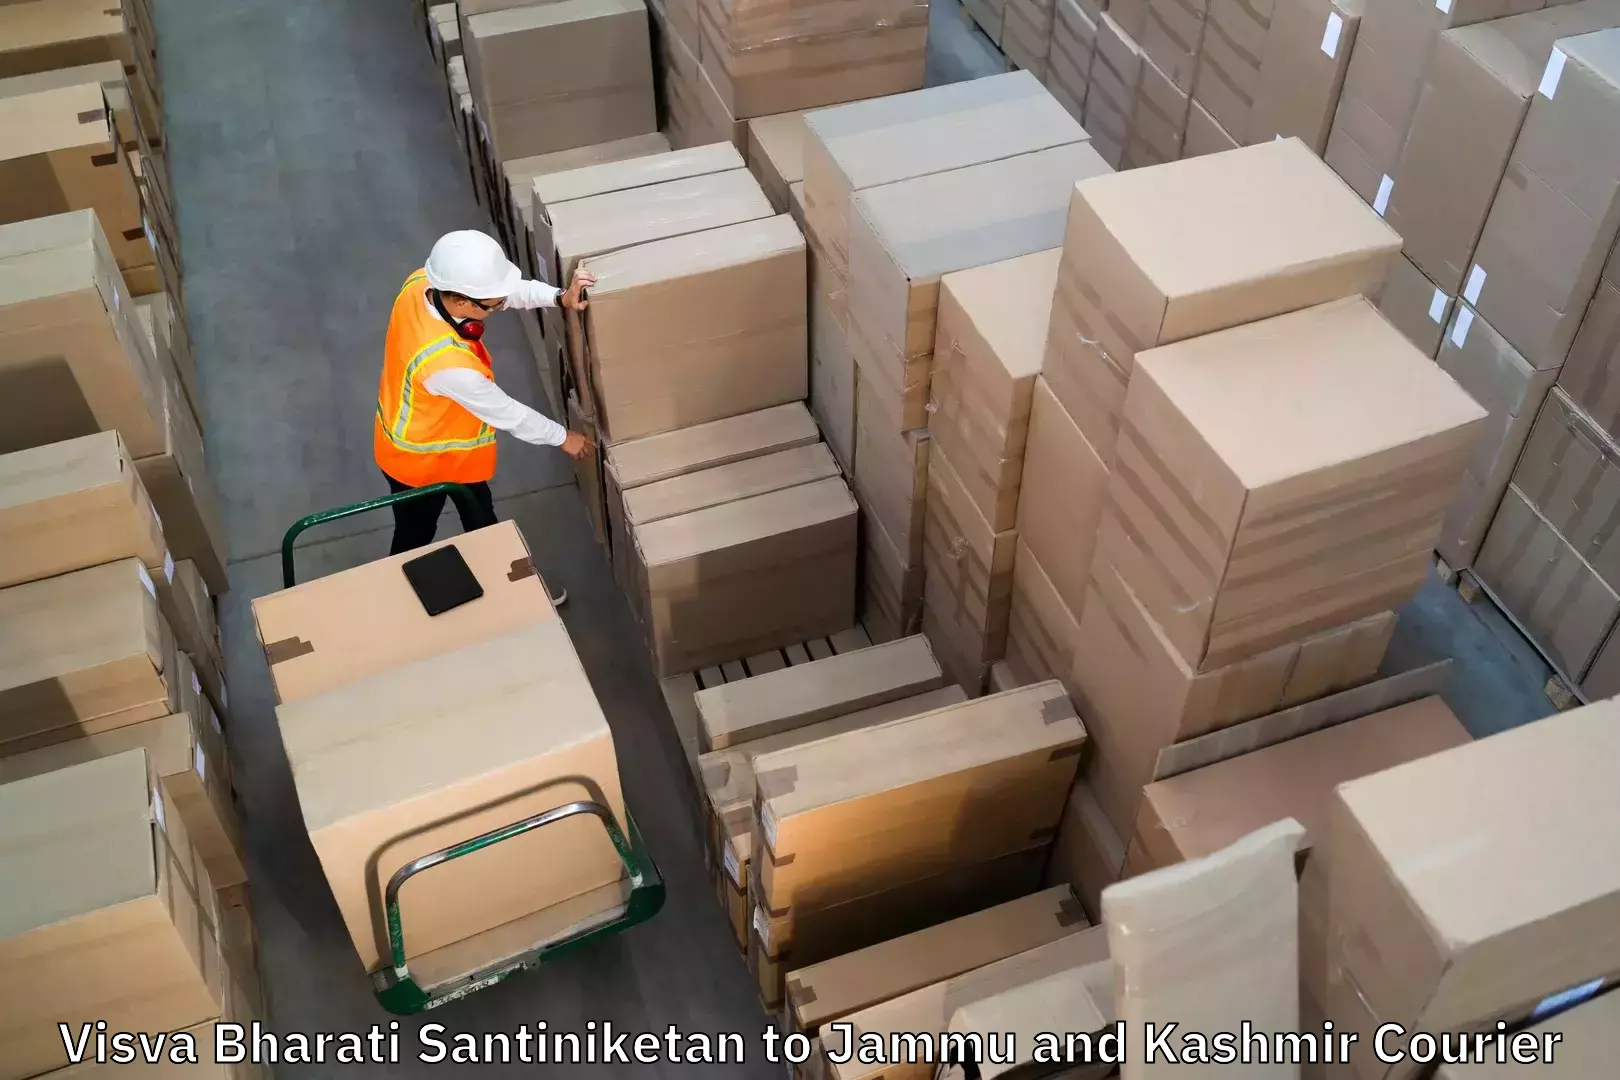 Reliable luggage courier Visva Bharati Santiniketan to IIT Jammu